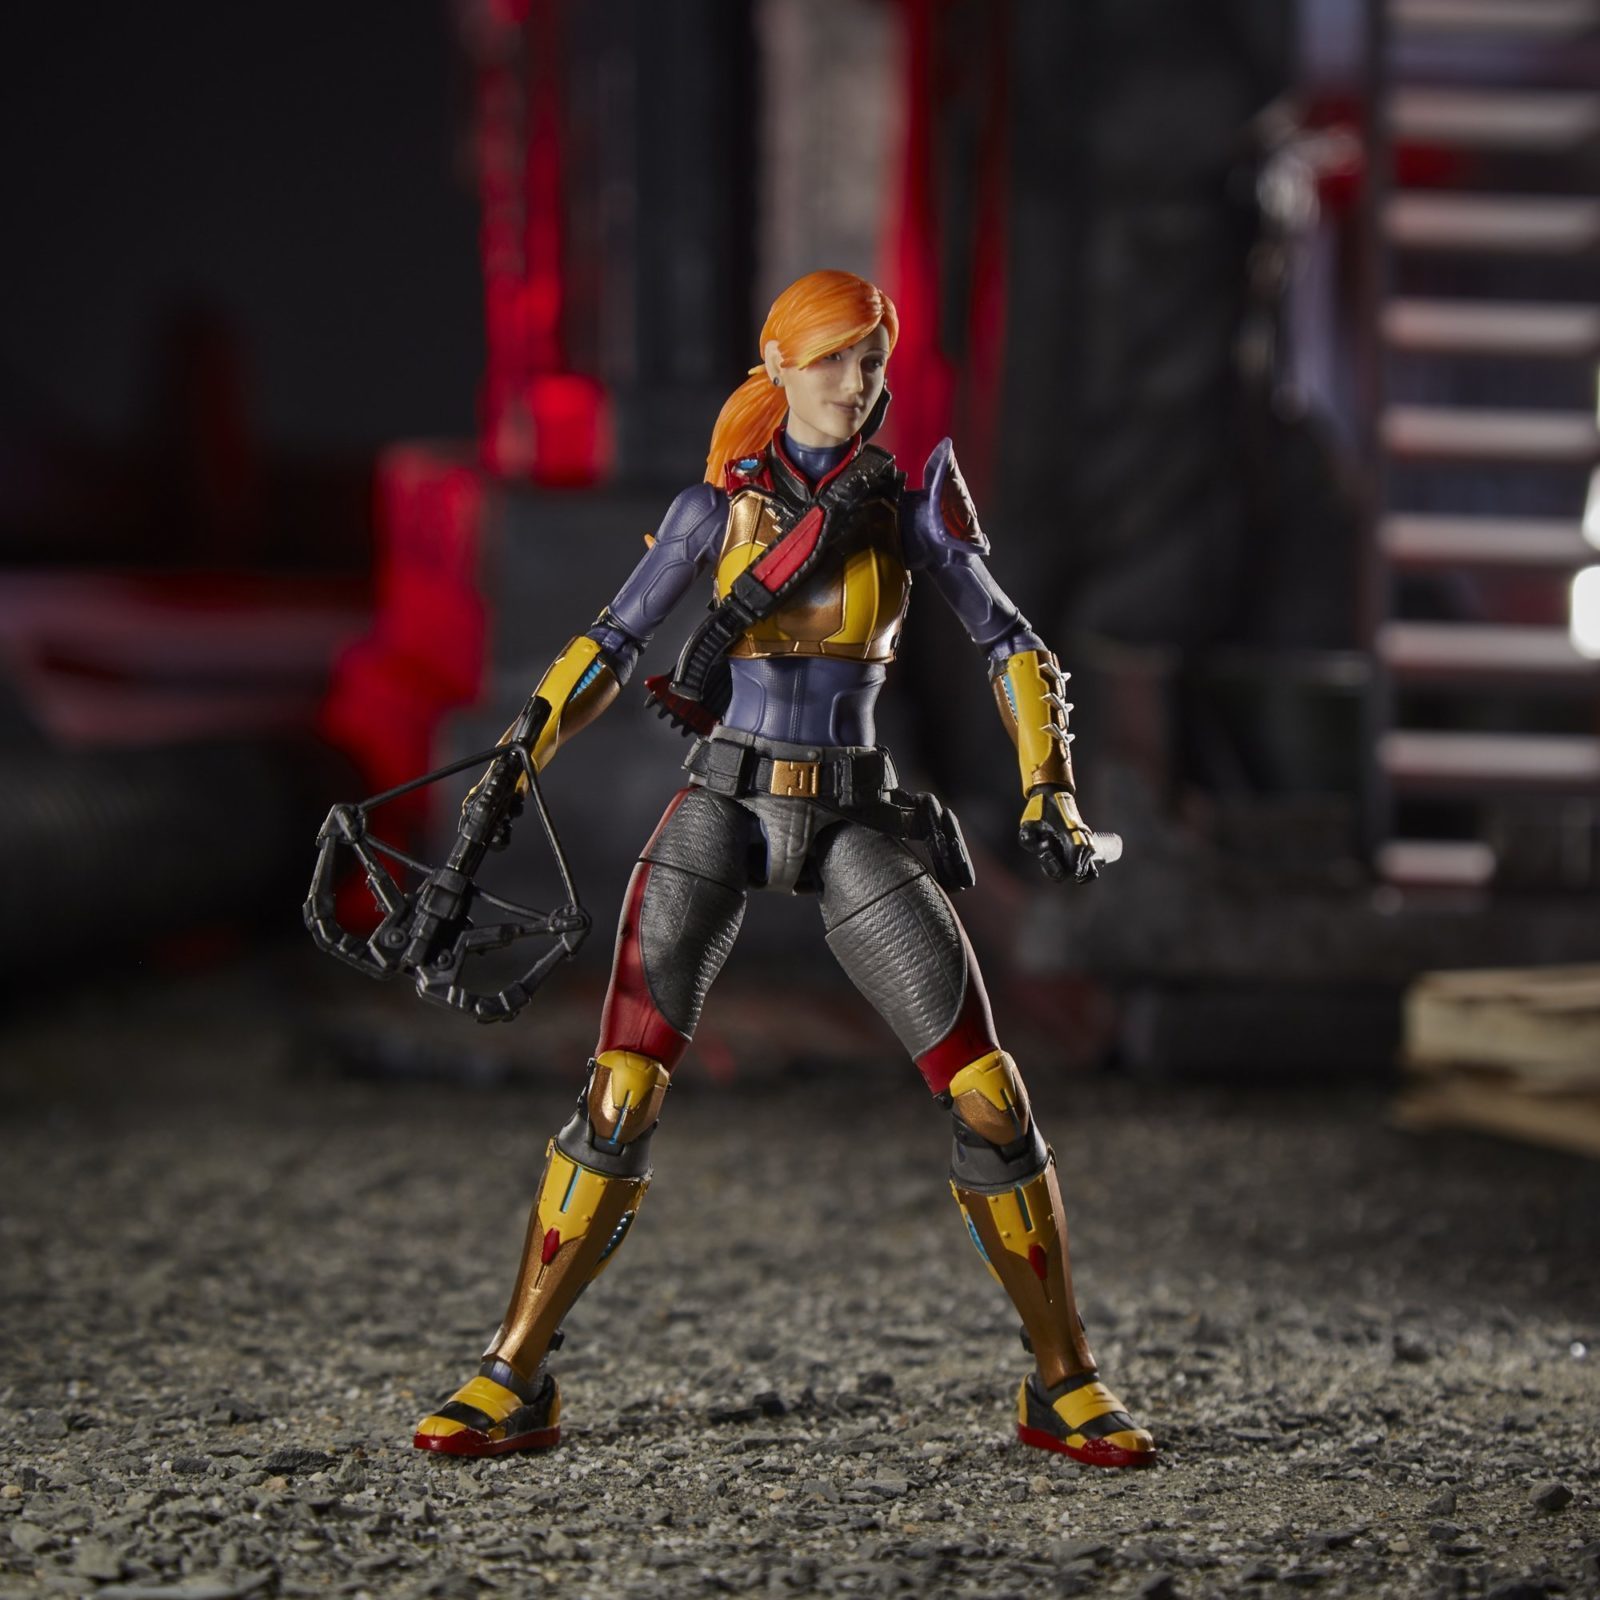 G.I. Joe Classified Series Scarlett Action Figure